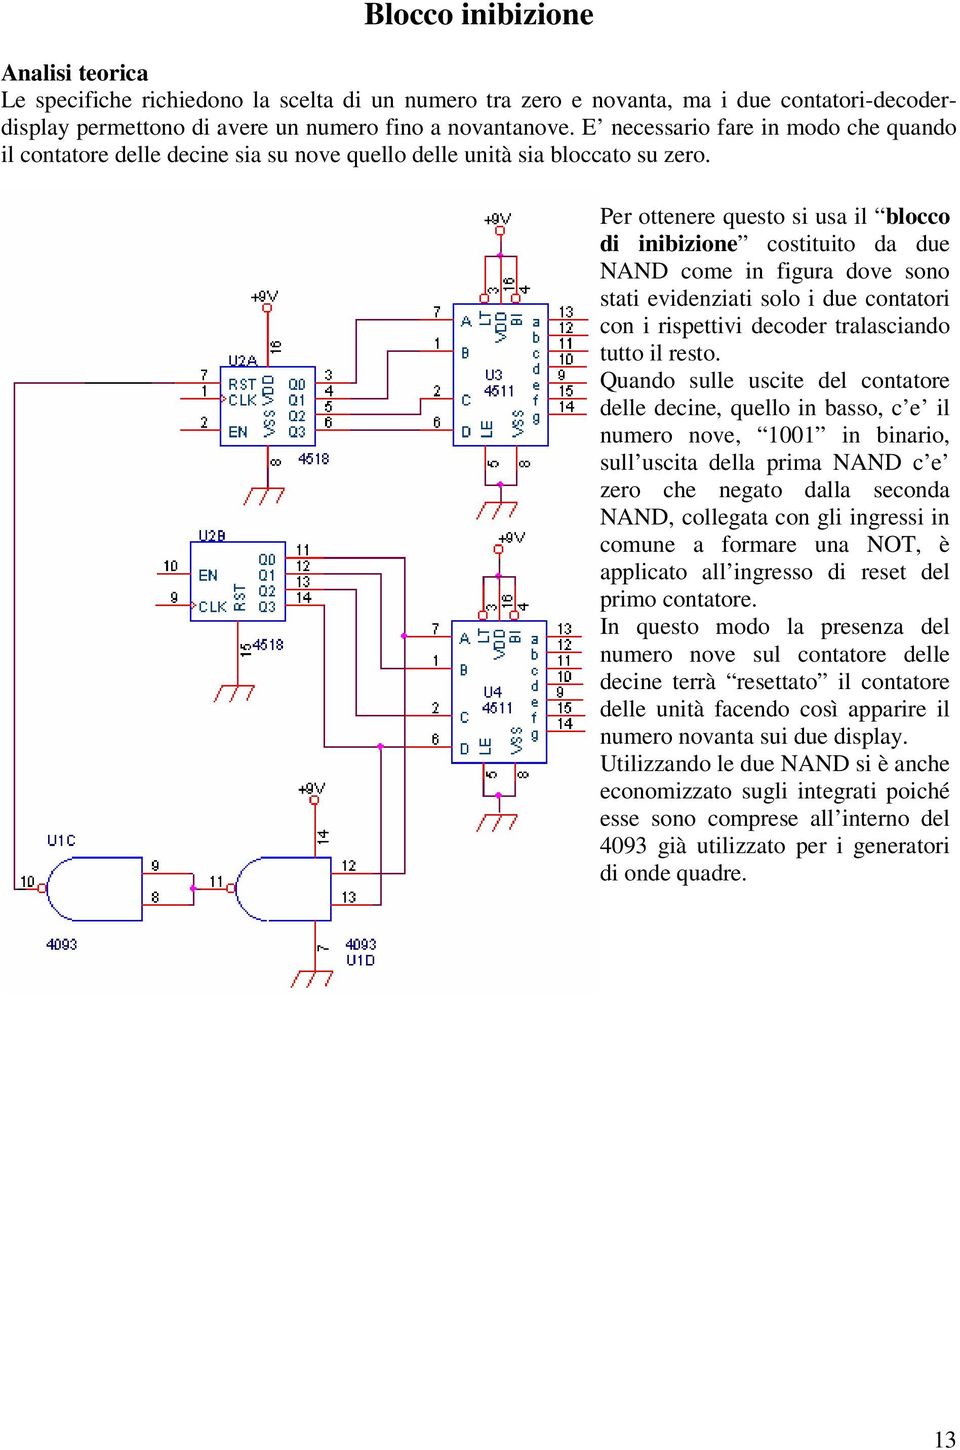 Per ottenere questo si usa il blocco di inibizione costituito da due NAND come in figura dove sono stati evidenziati solo i due contatori con i rispettivi decoder tralasciando tutto il resto.